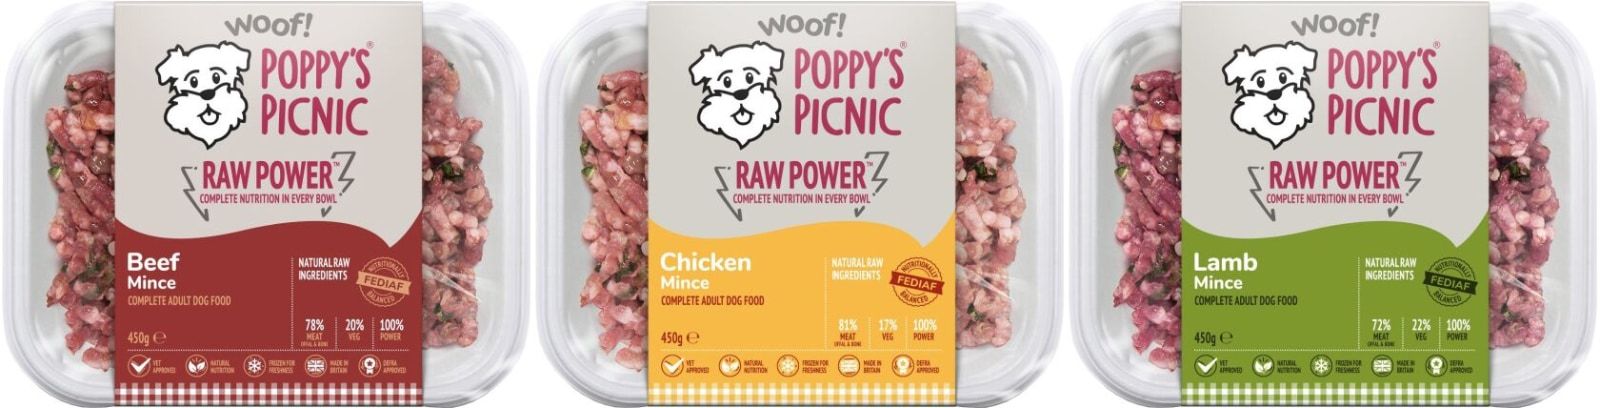 Poppy's Picnic Raw Power